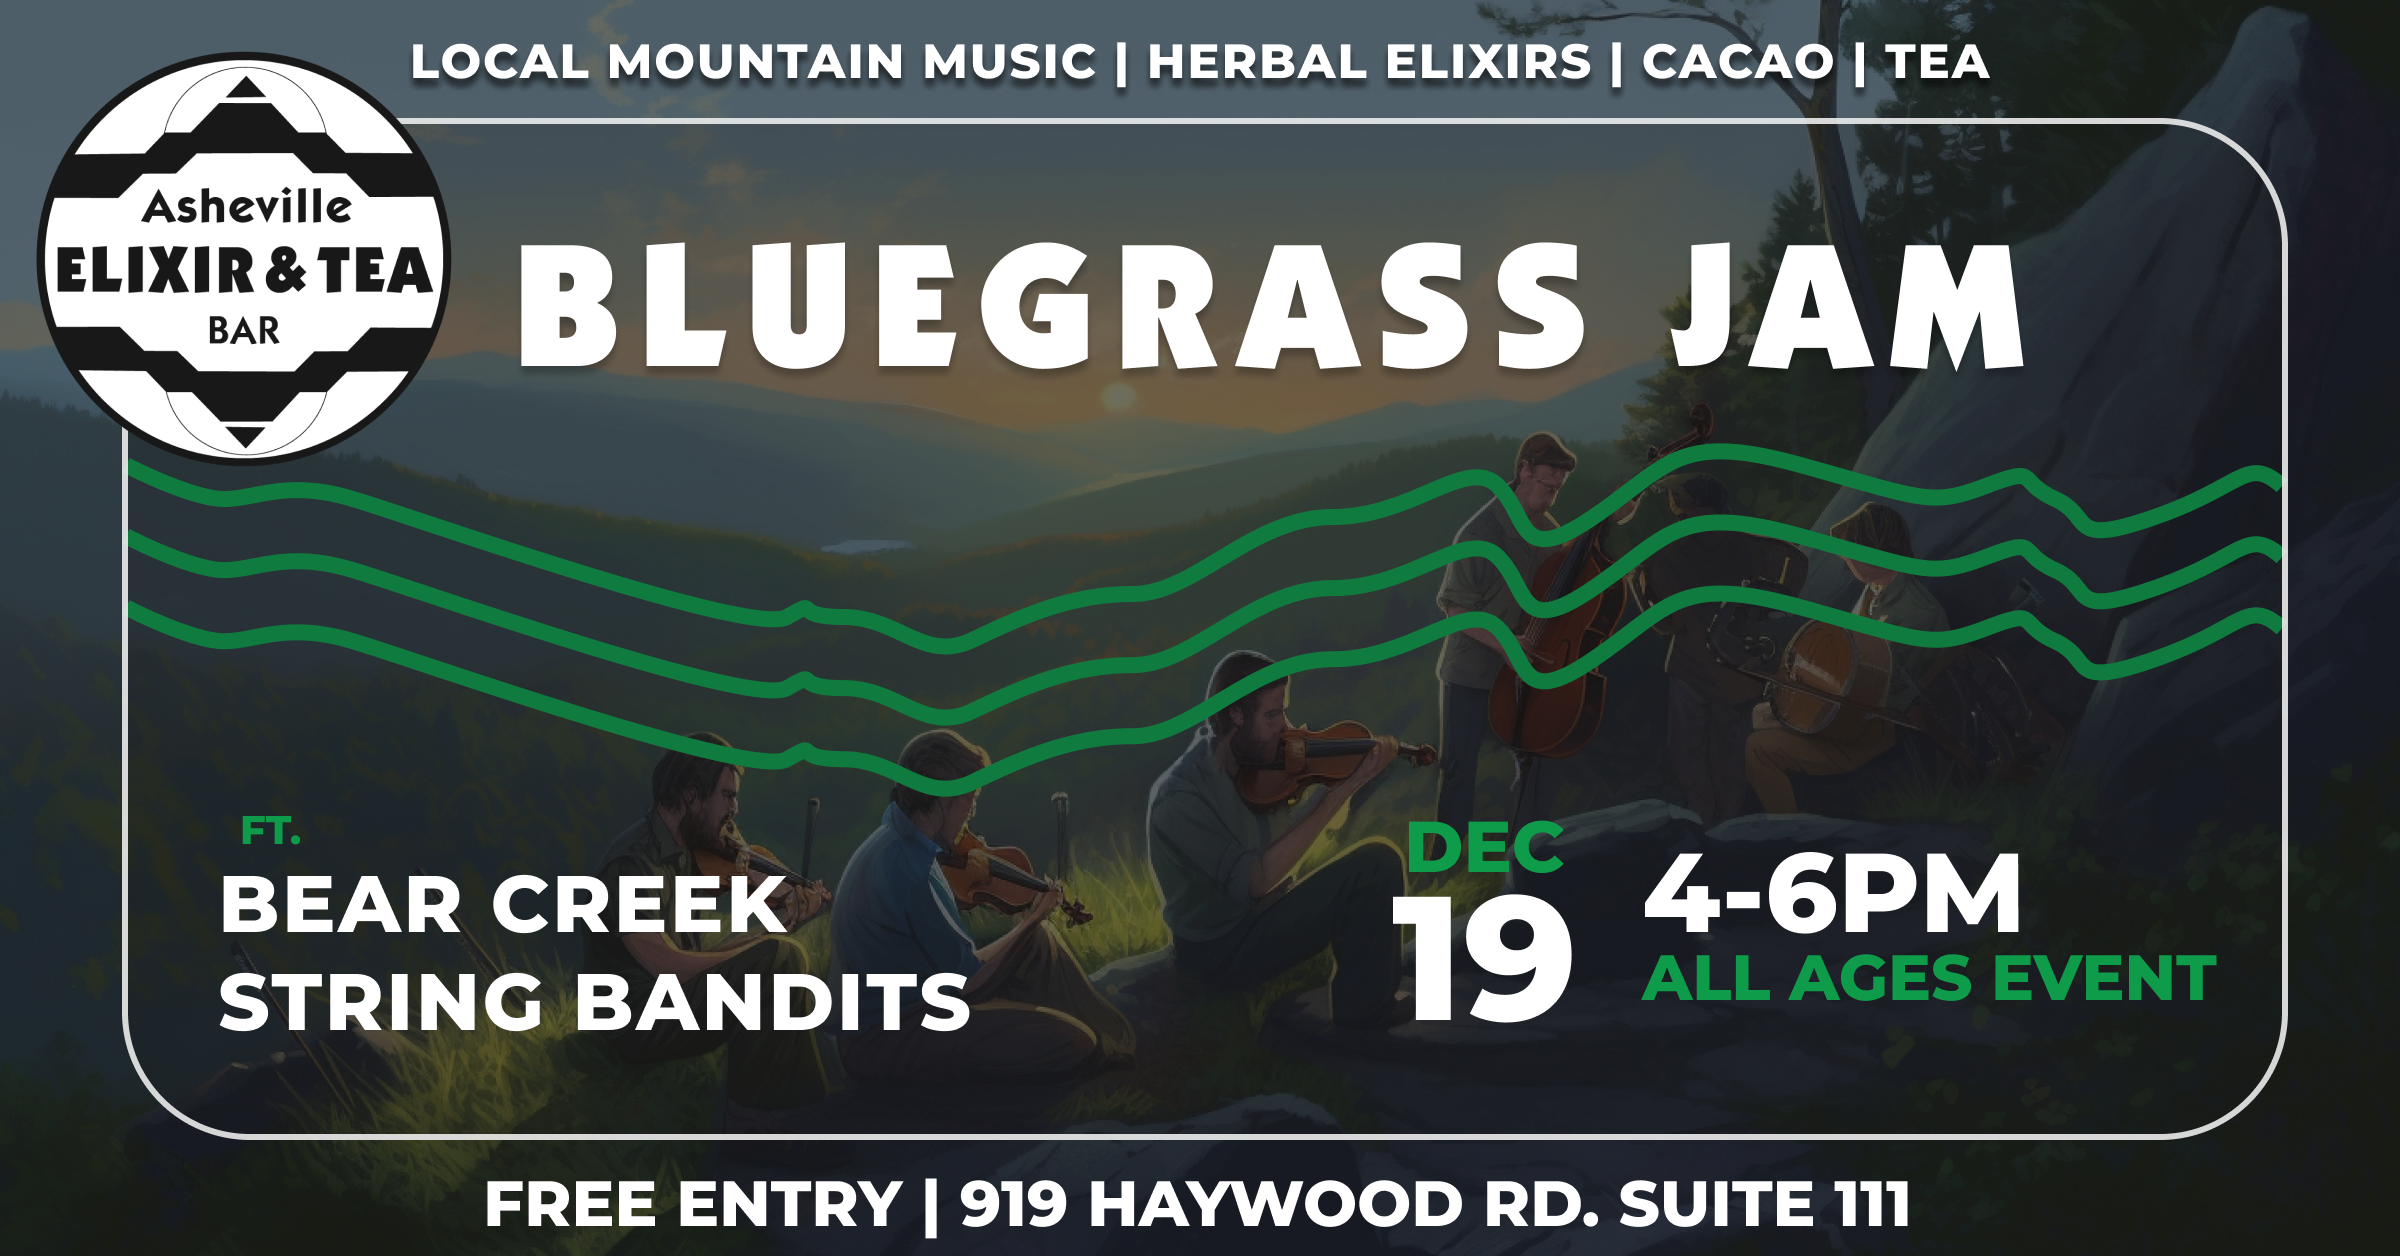 Bluegrass Jam December 19th